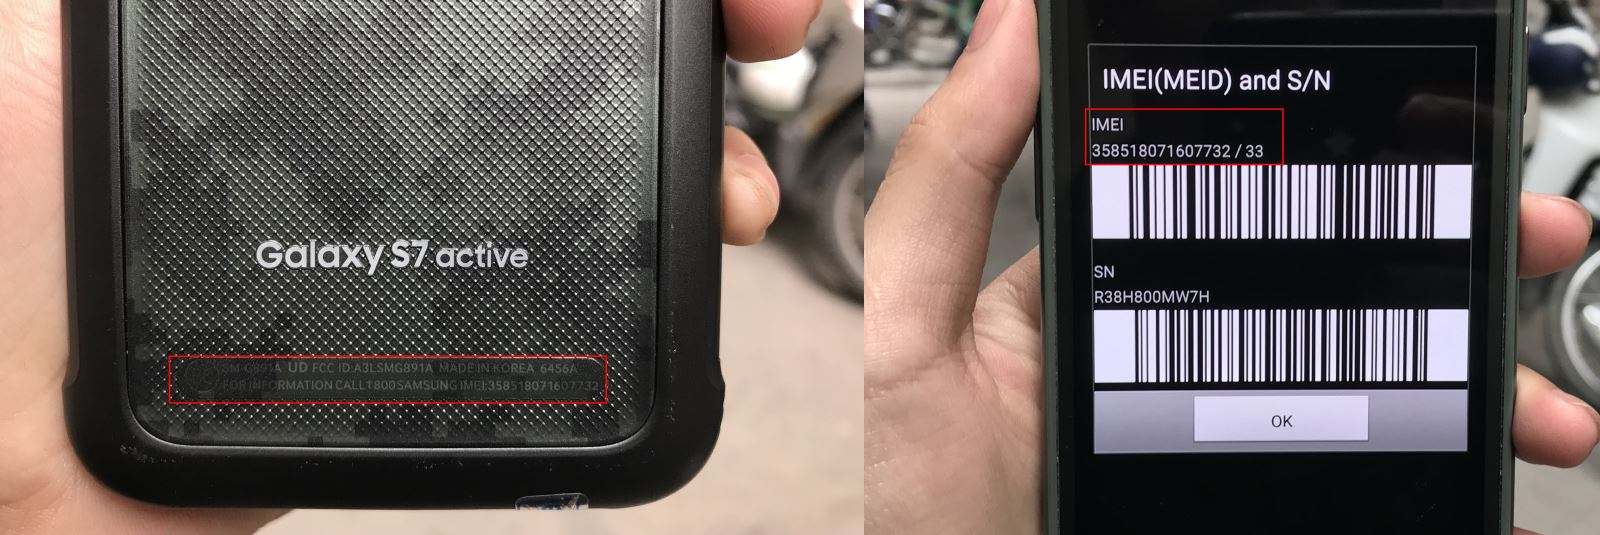 imei trong và sau lưng máy Galaxy S7 Active Xách Tay phải trùng nhau